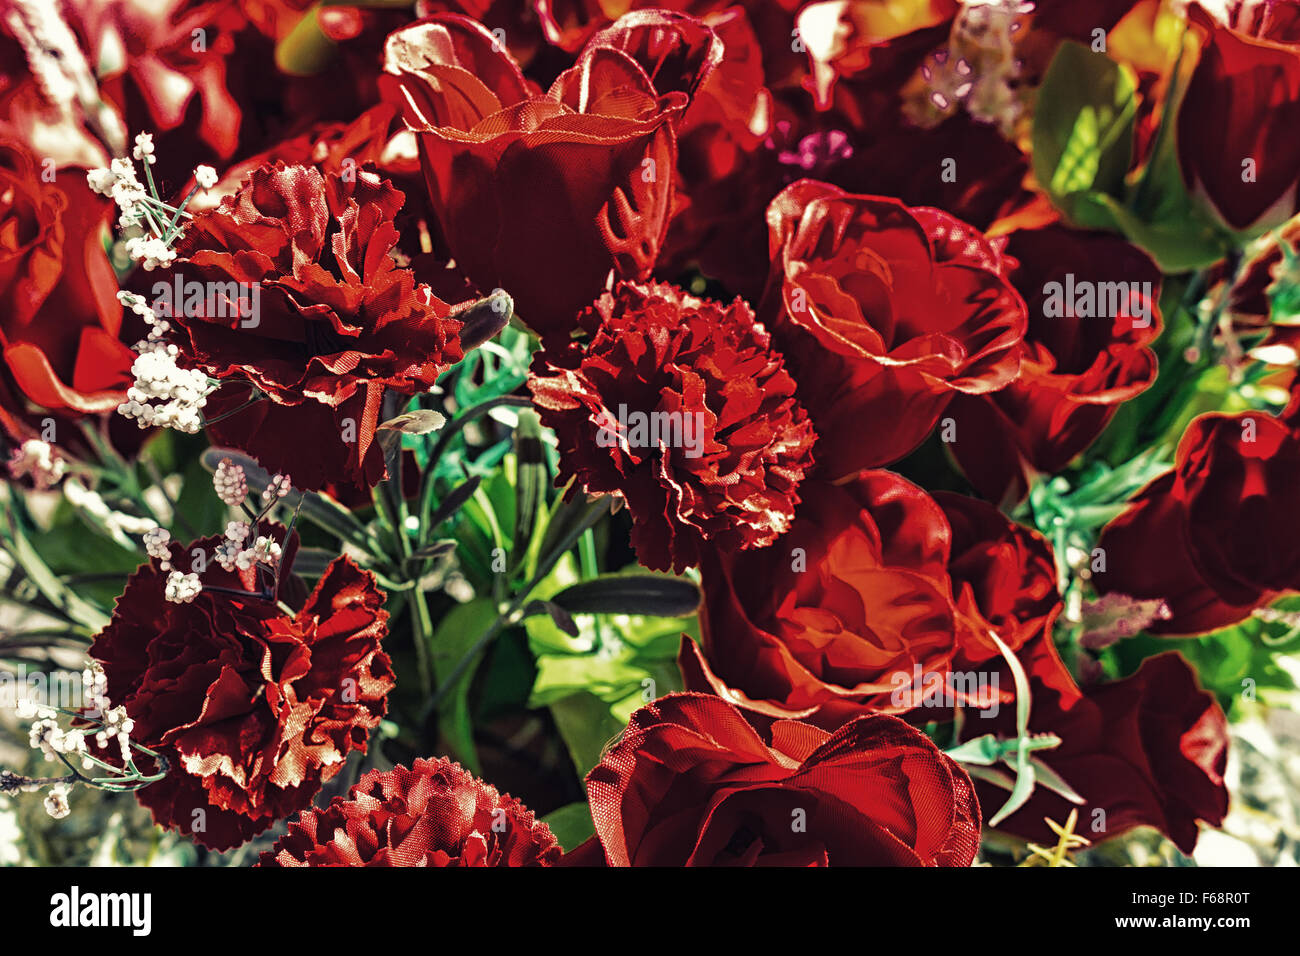 Flores falsas fotografías e imágenes de alta resolución - Página 2 - Alamy